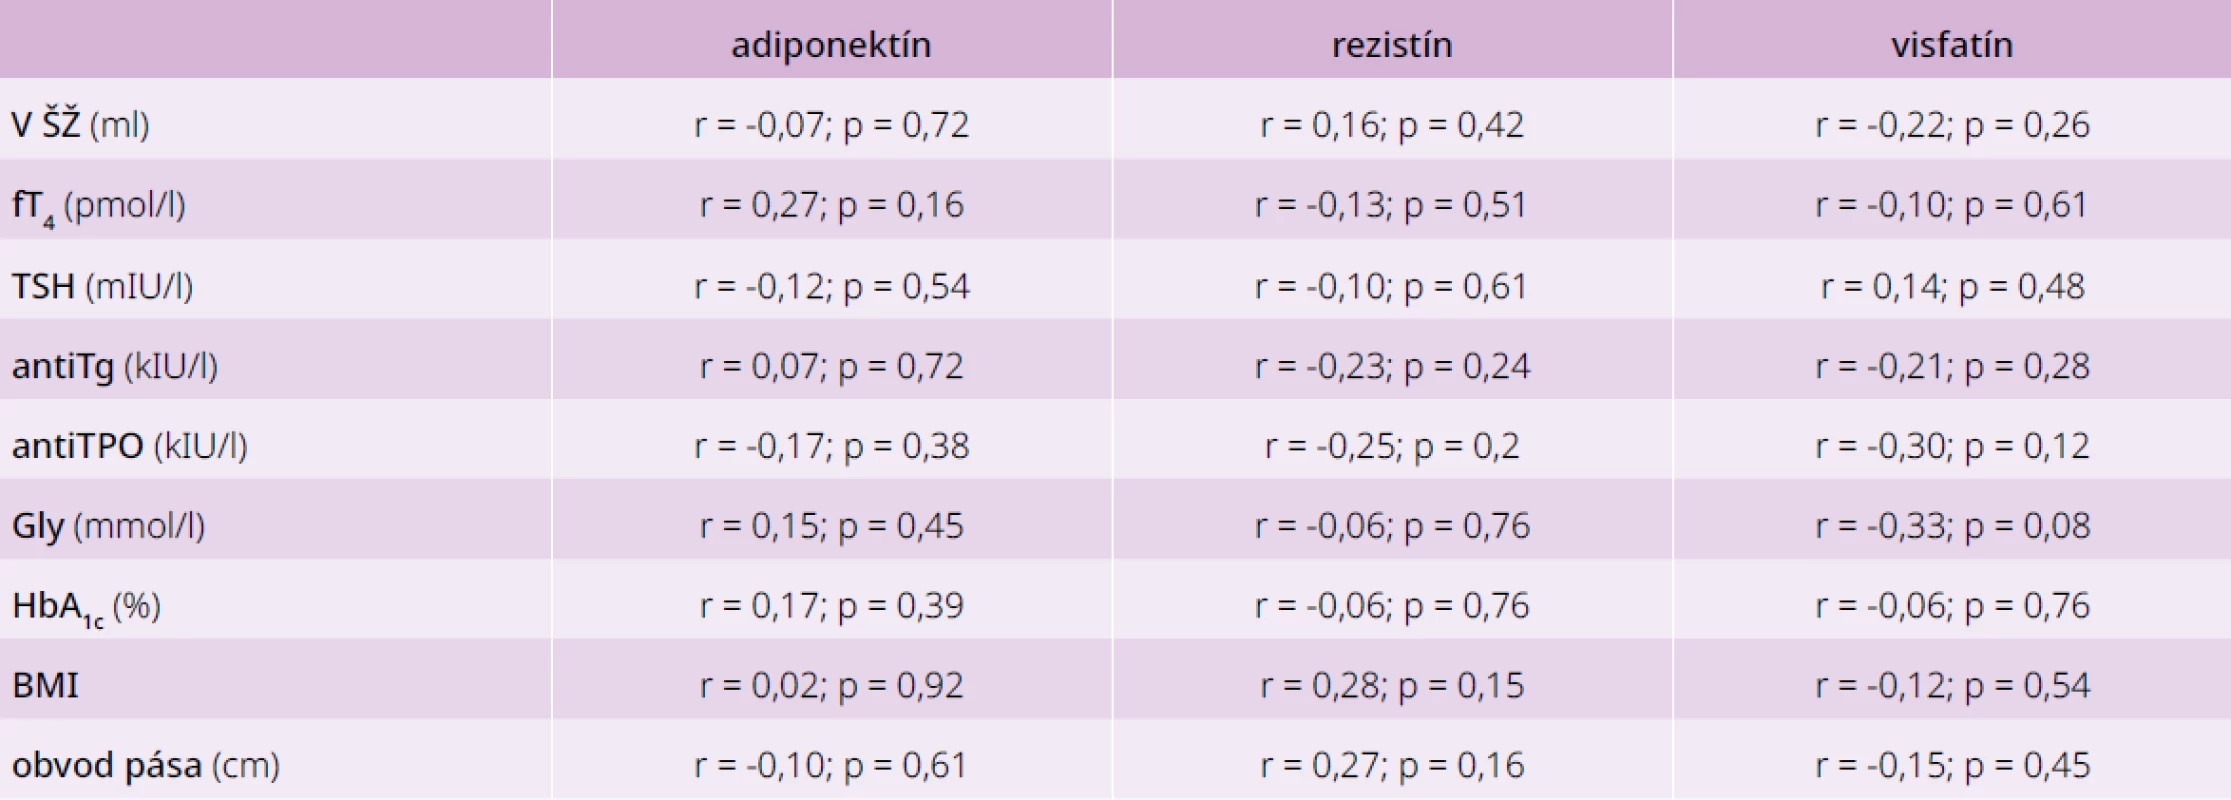 Korelácie medzi jednotlivými adipokínmi a parametrami glycidového a tyroidálneho
metabolizmu u pacientov s DM2T s AIT